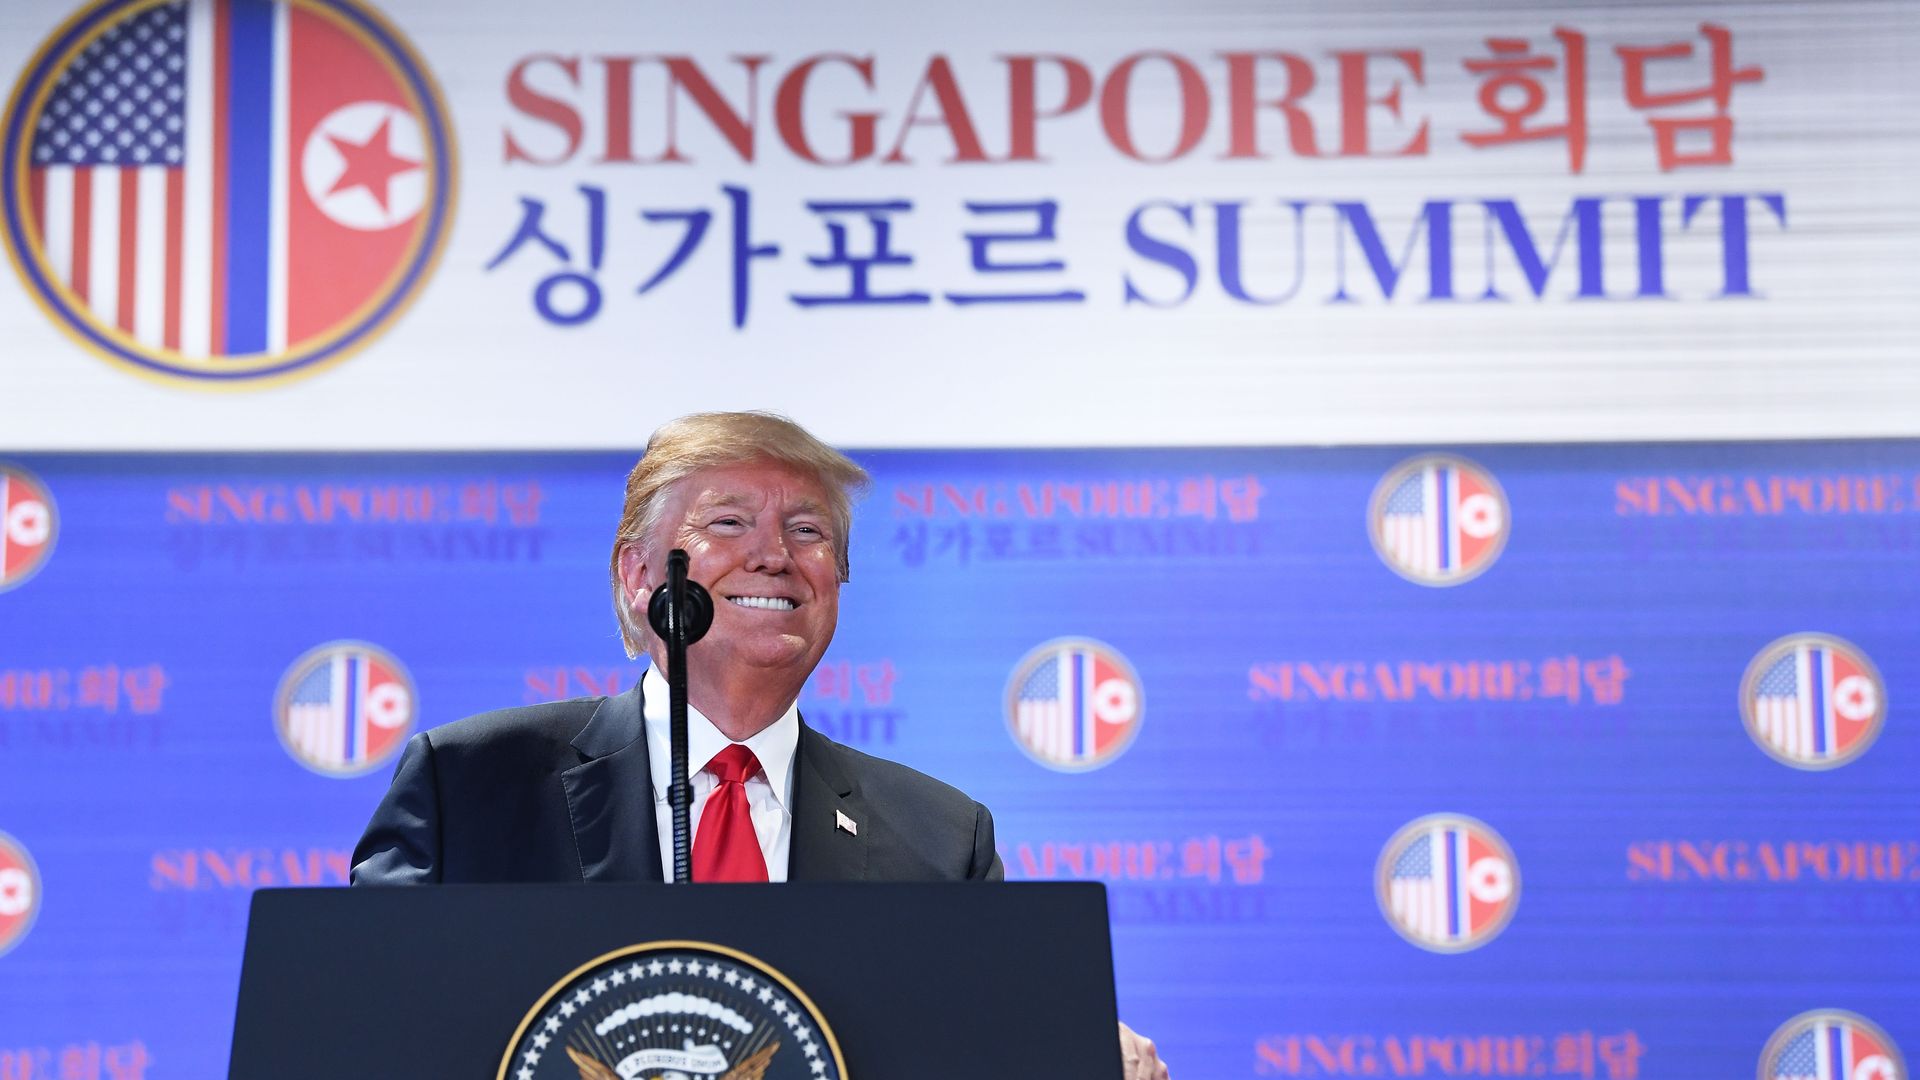 Donald Trump at lectern at Singapore summit